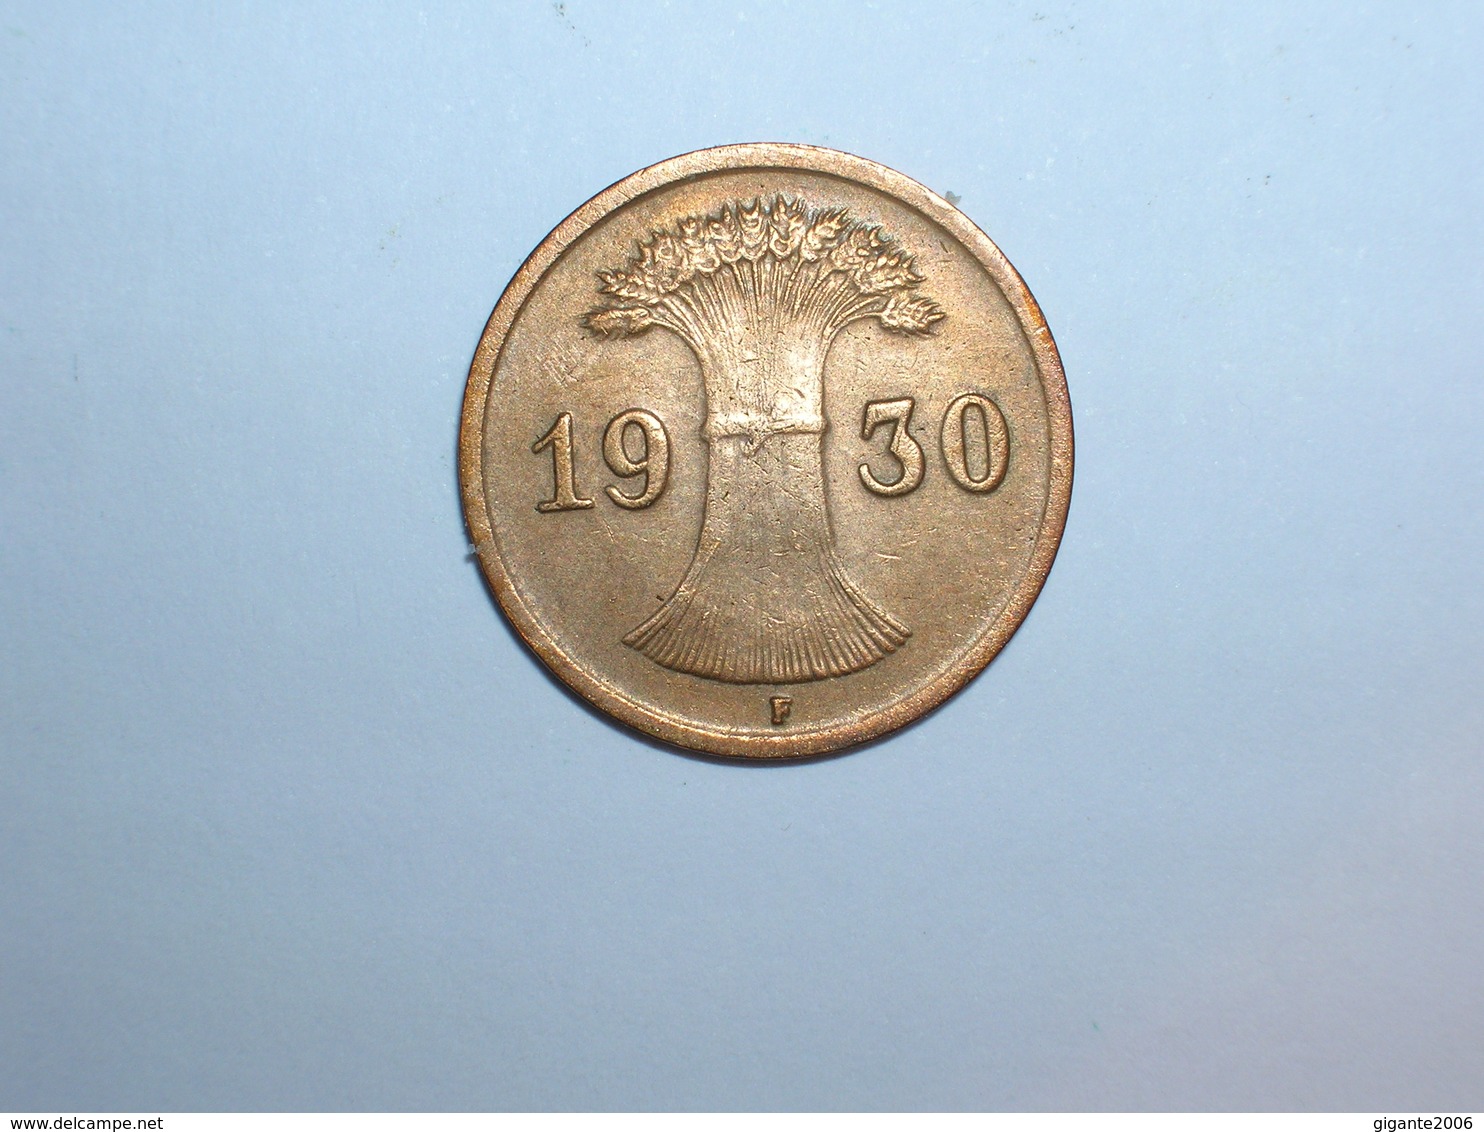 ALEMANIA 1 REICHPFENNIG 1930 F (1135) - 1 Rentenpfennig & 1 Reichspfennig